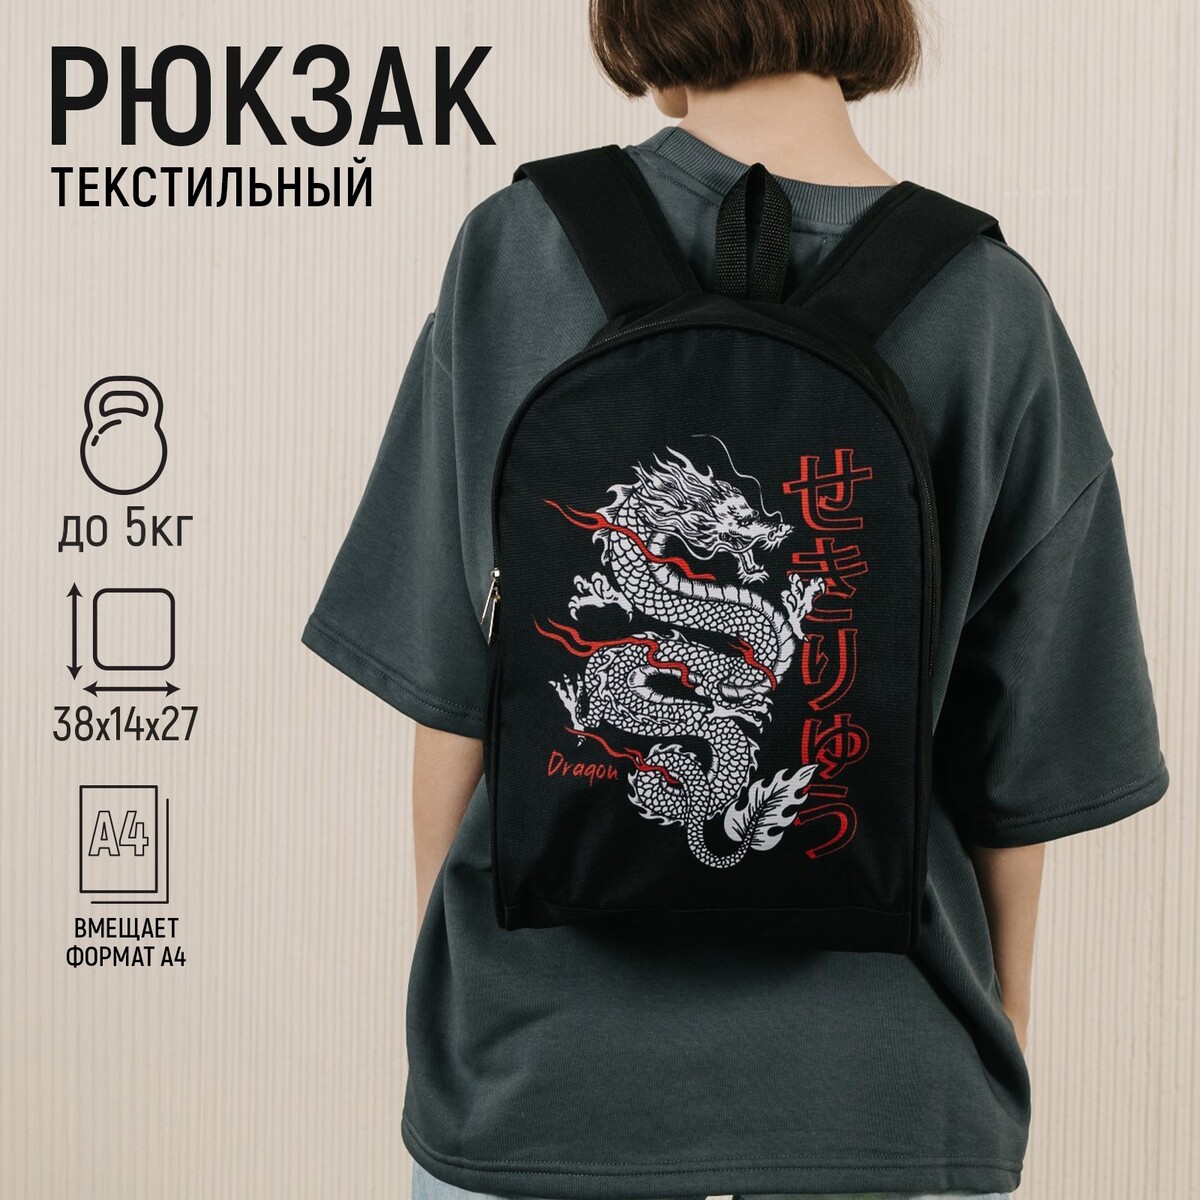 Рюкзак текстильный дракон, 38х14х27 см, цвет черный NAZAMOK